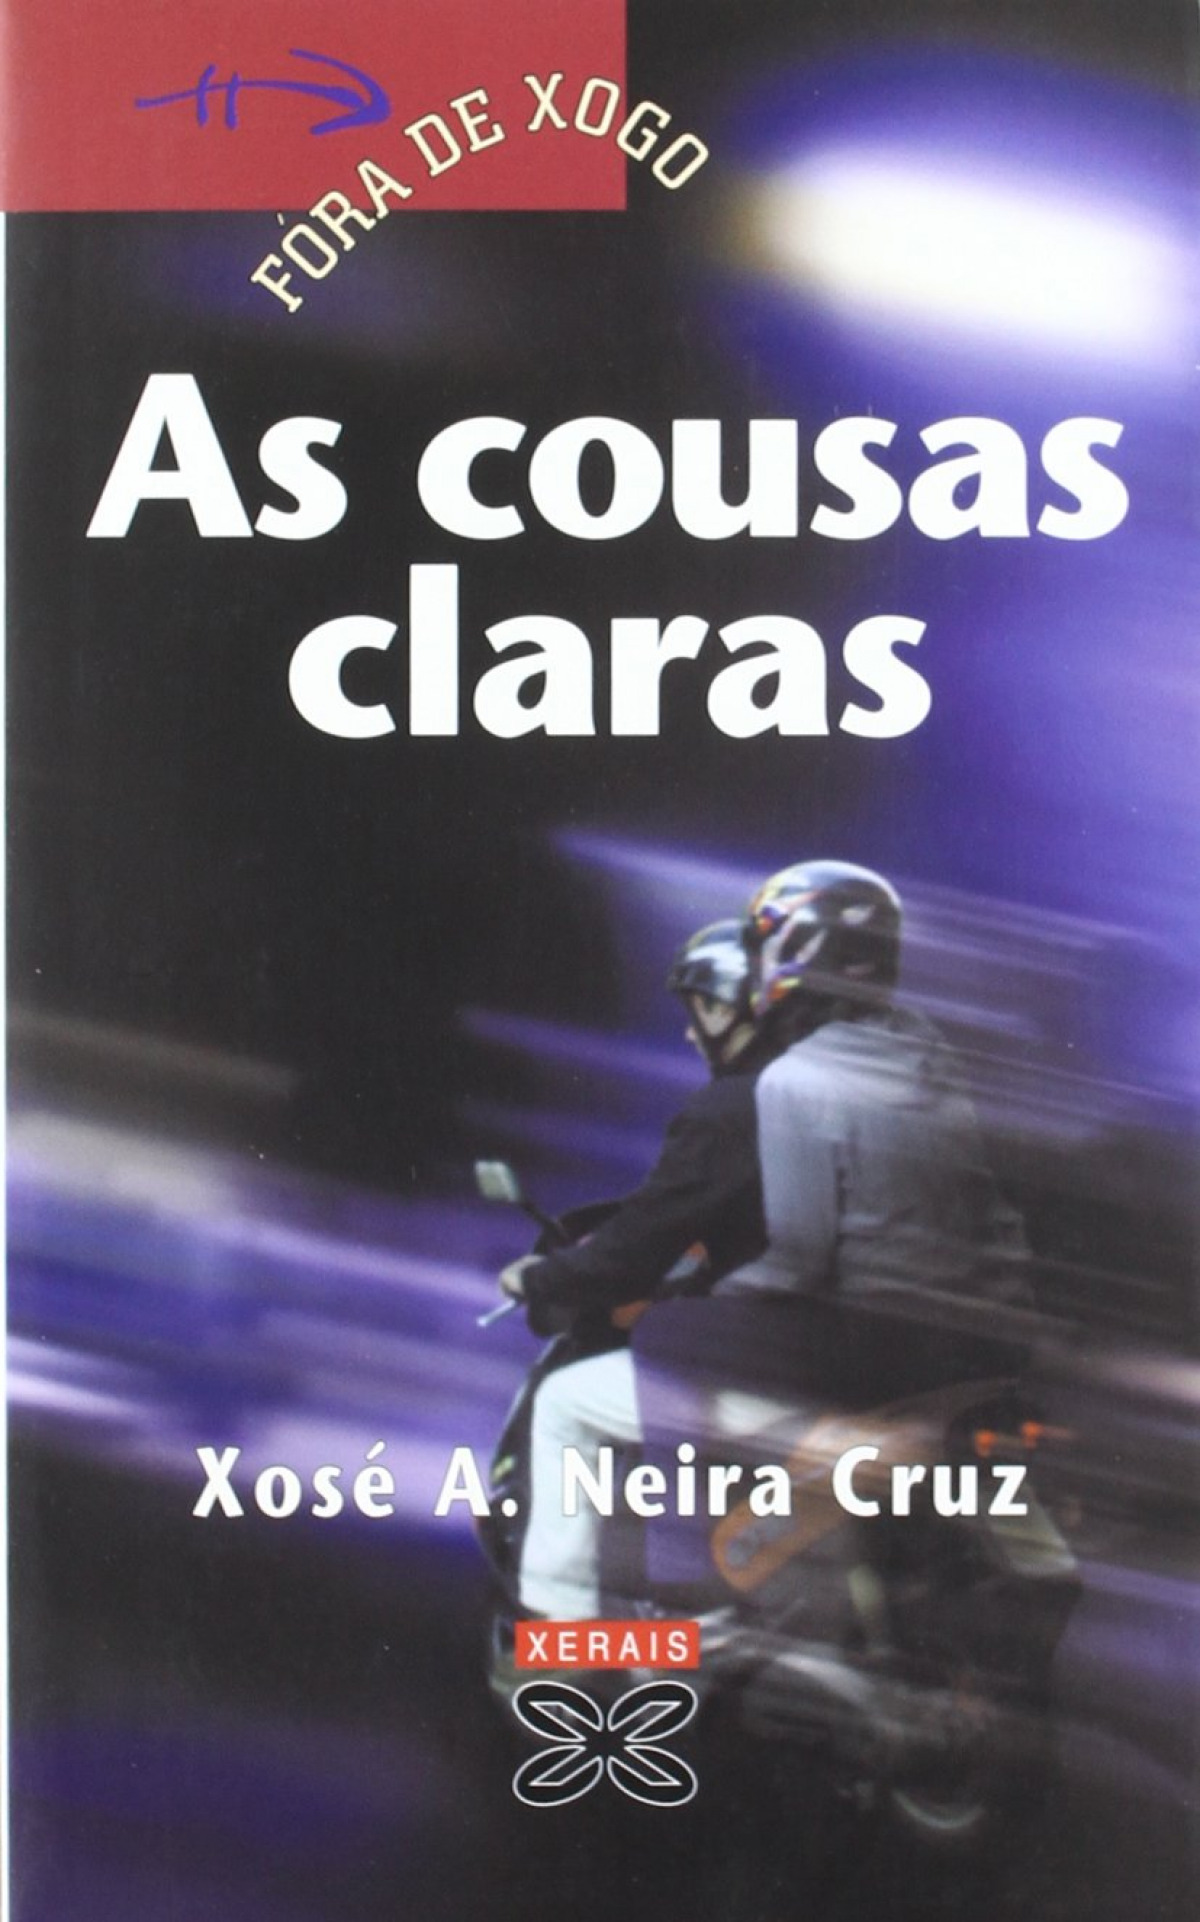 As cousas claras - Neira Cruz, Xosé A.